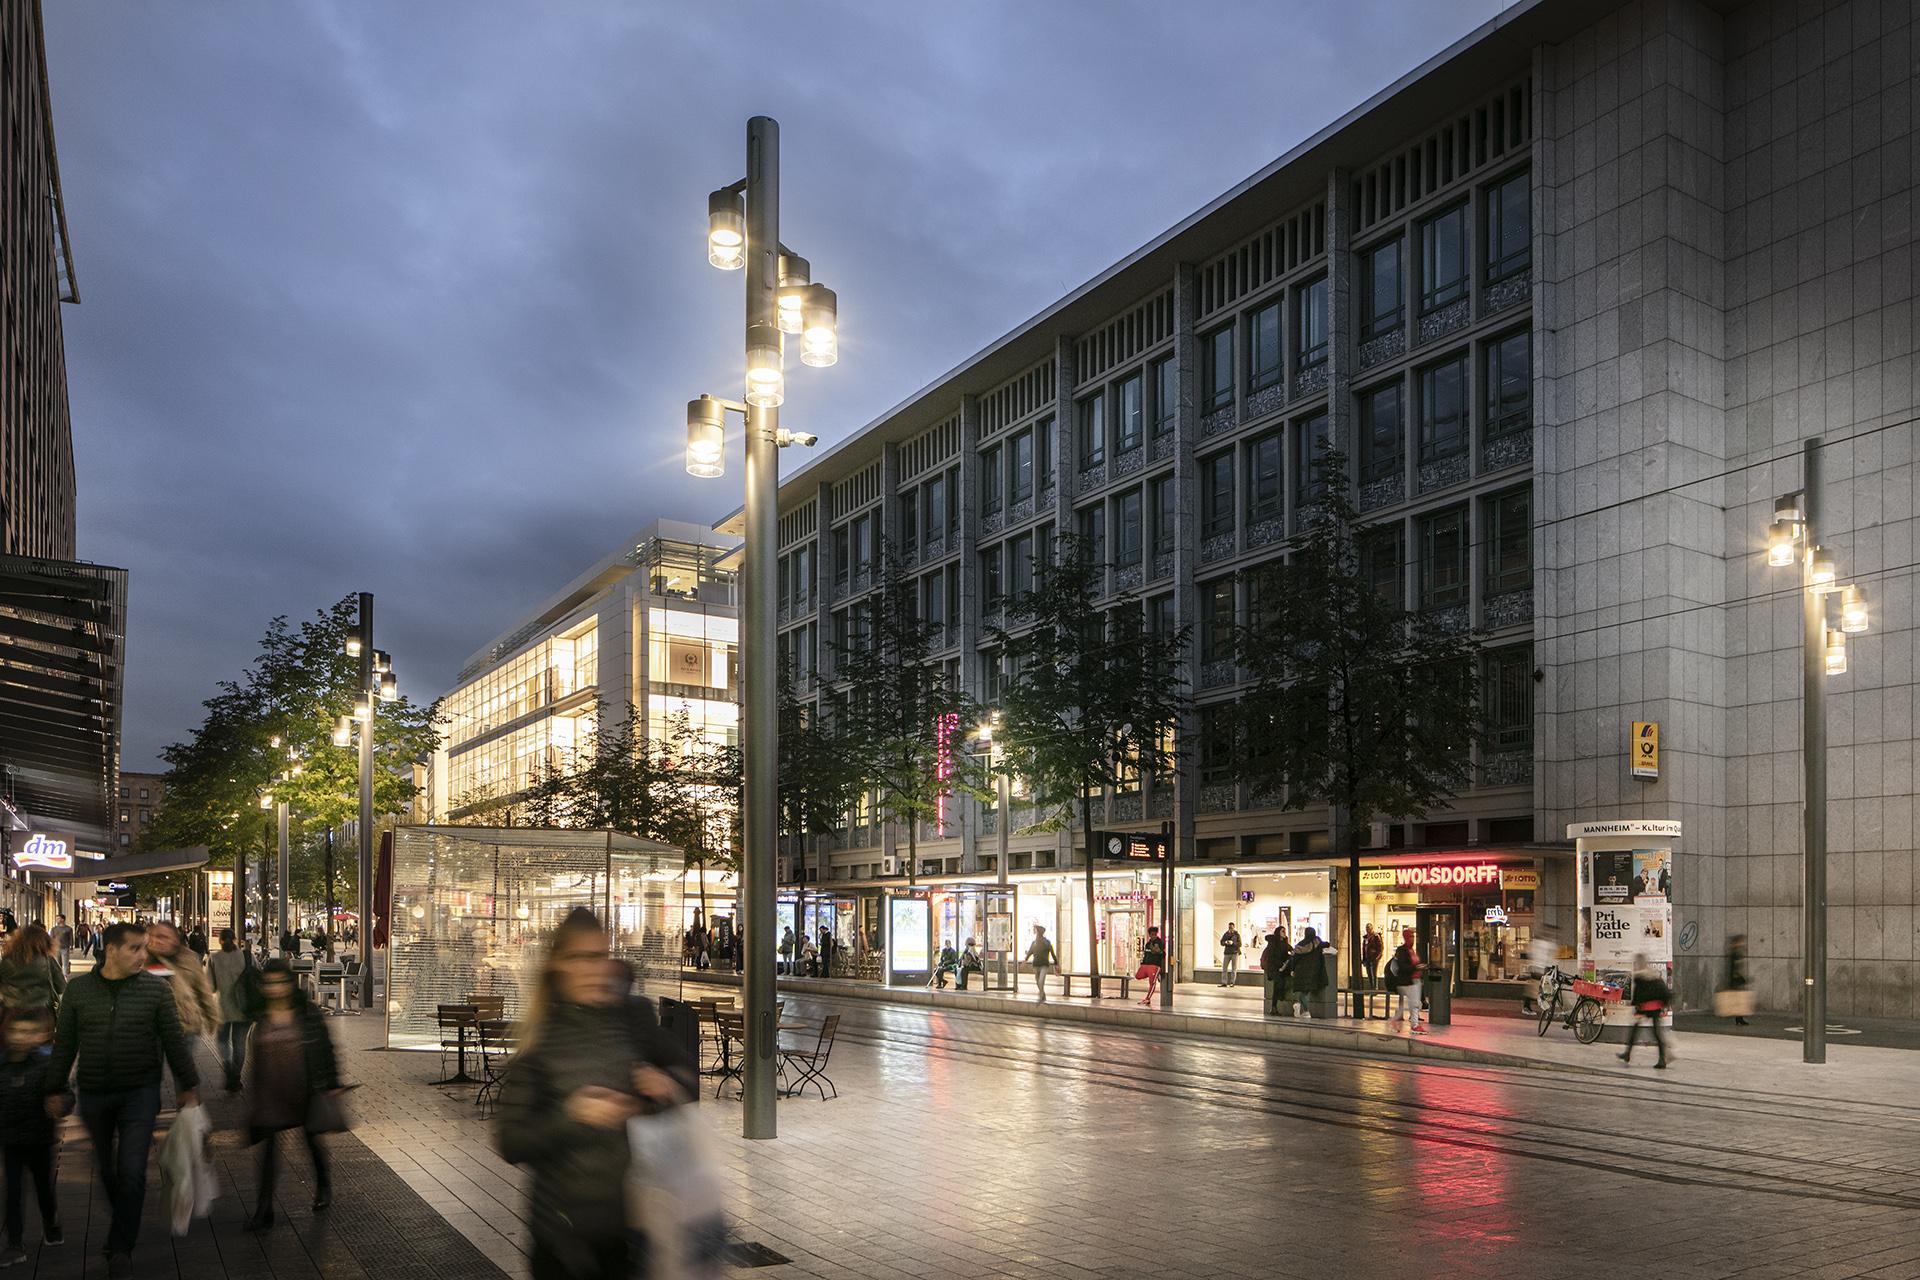 Schréder ha diseñado una luminaria a medida para iluminar el famoso centro comercial Planken, que refleja el carácter de la ciudad.